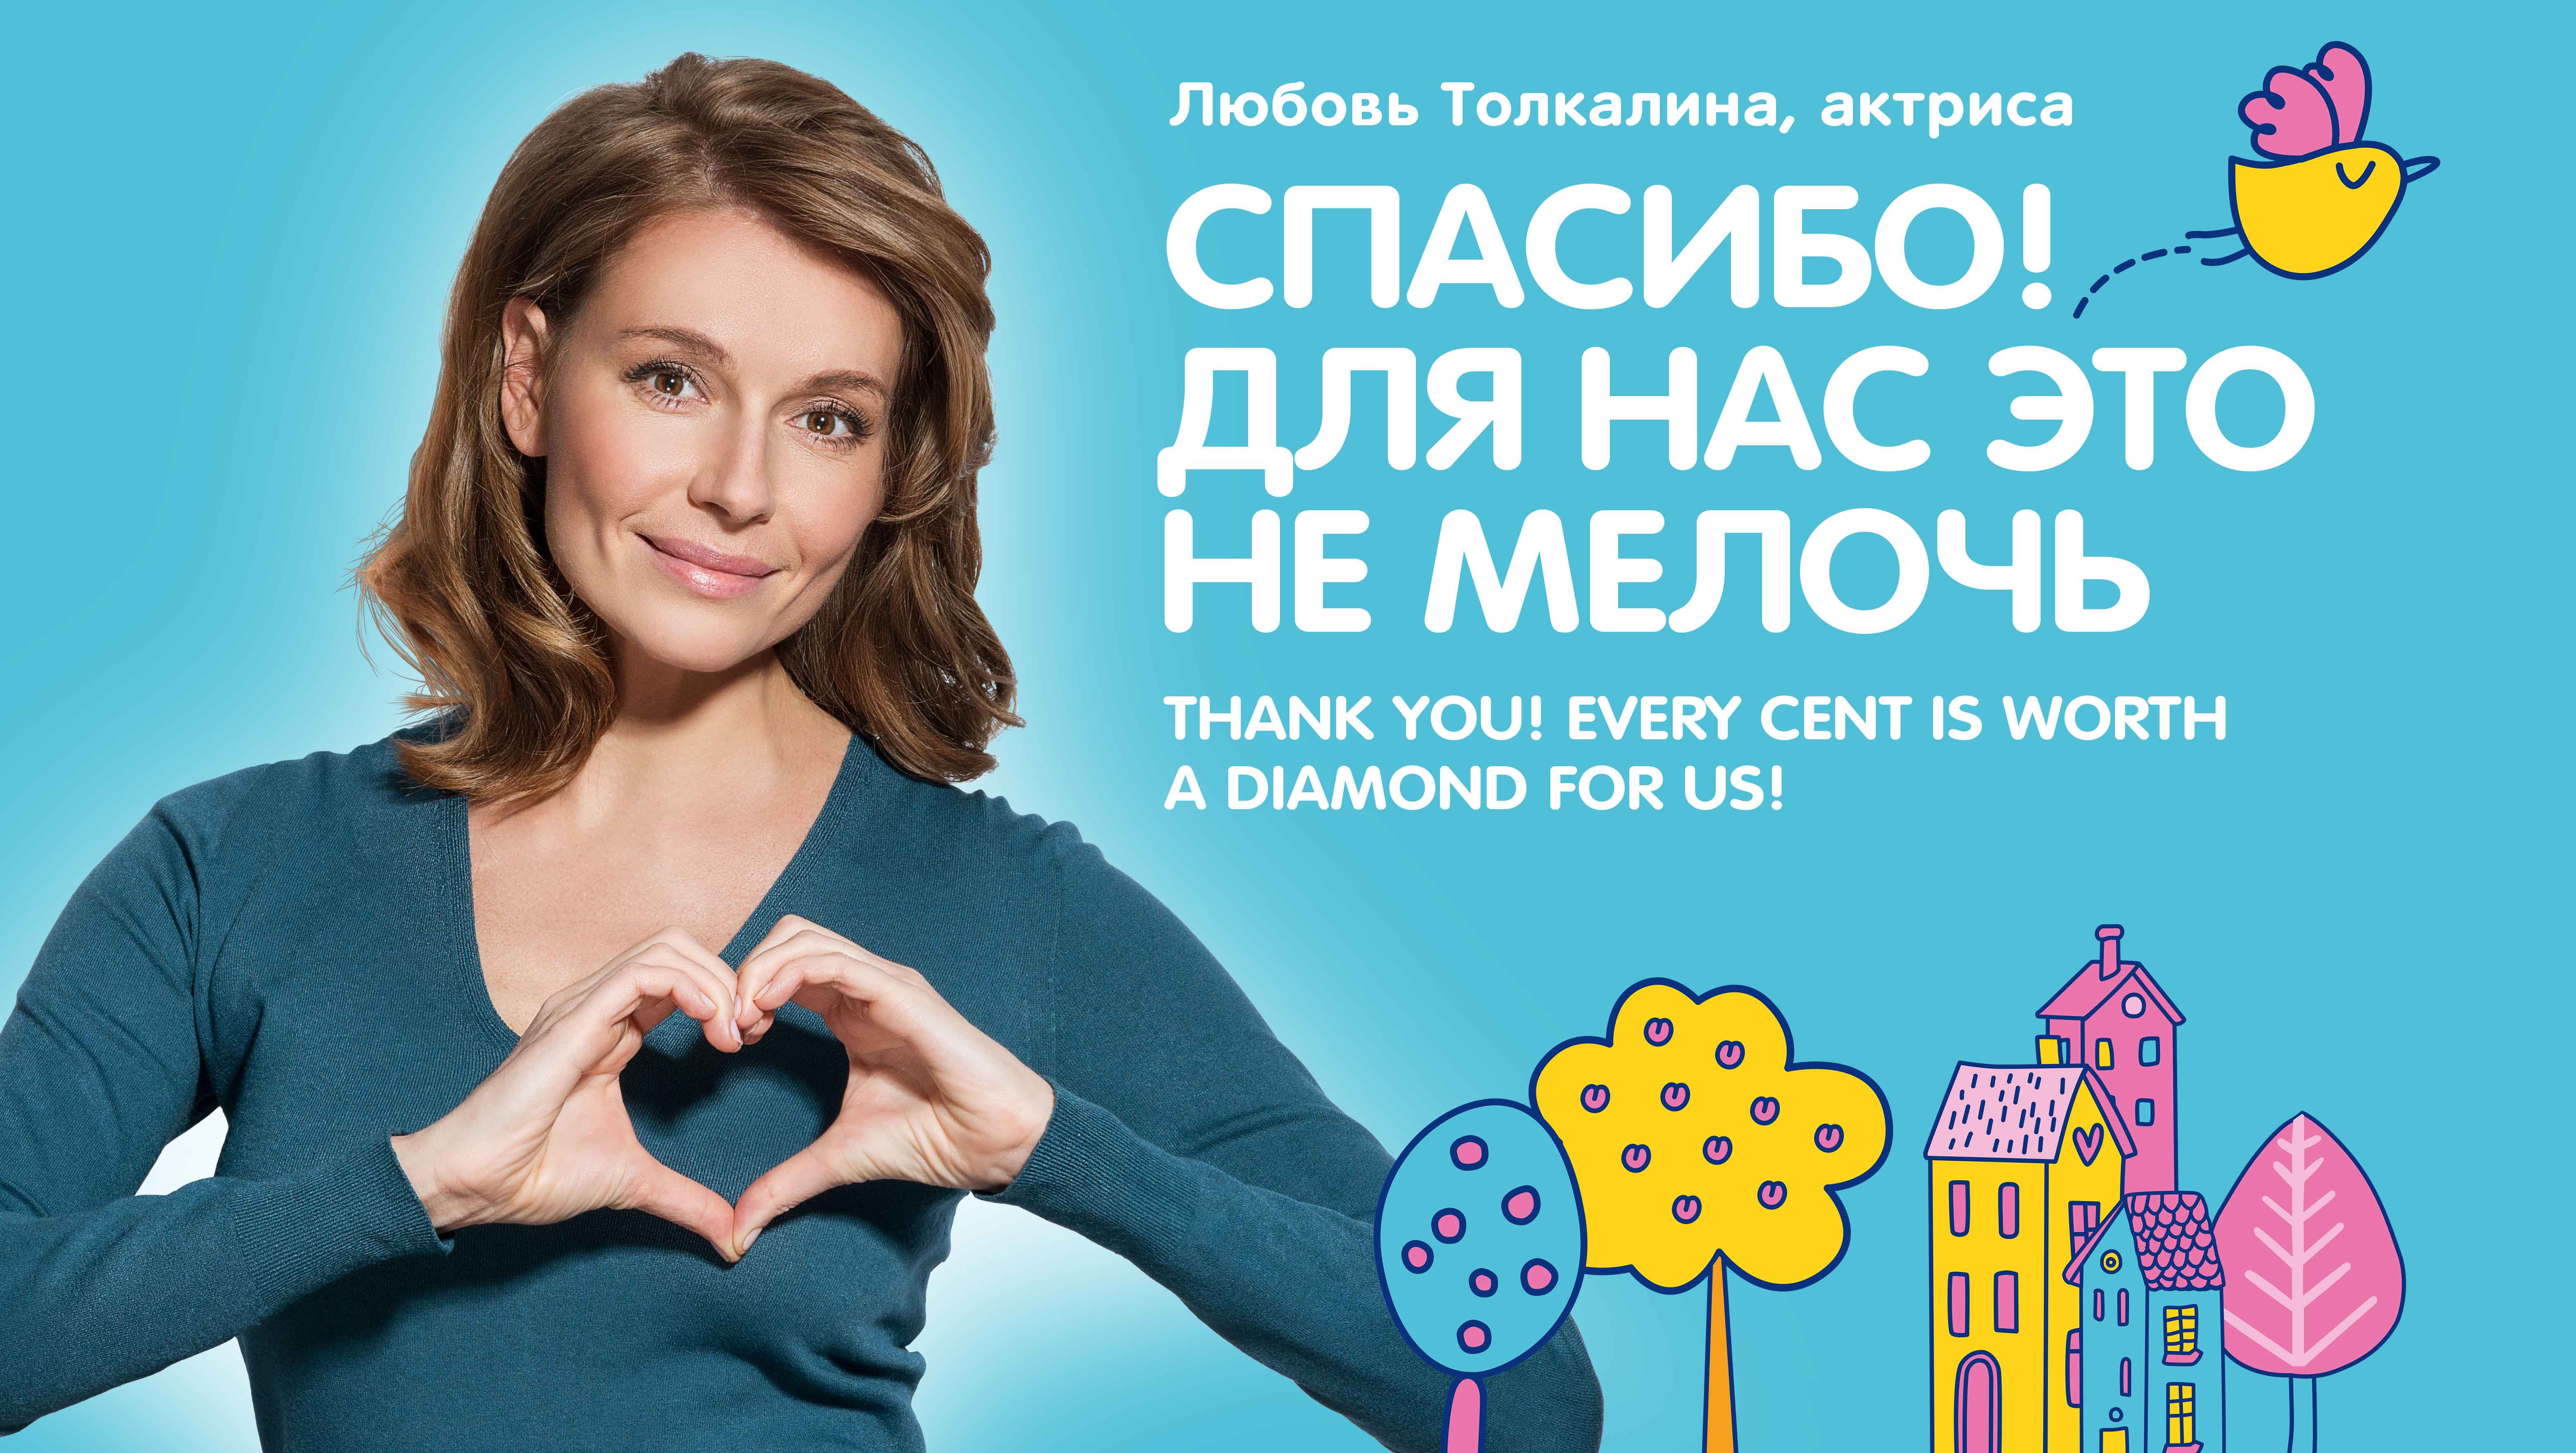 Актриса и режиссер Любовь Толкалина в поддержку детей-подопечных фонда "Помоги ребёнку.ру"